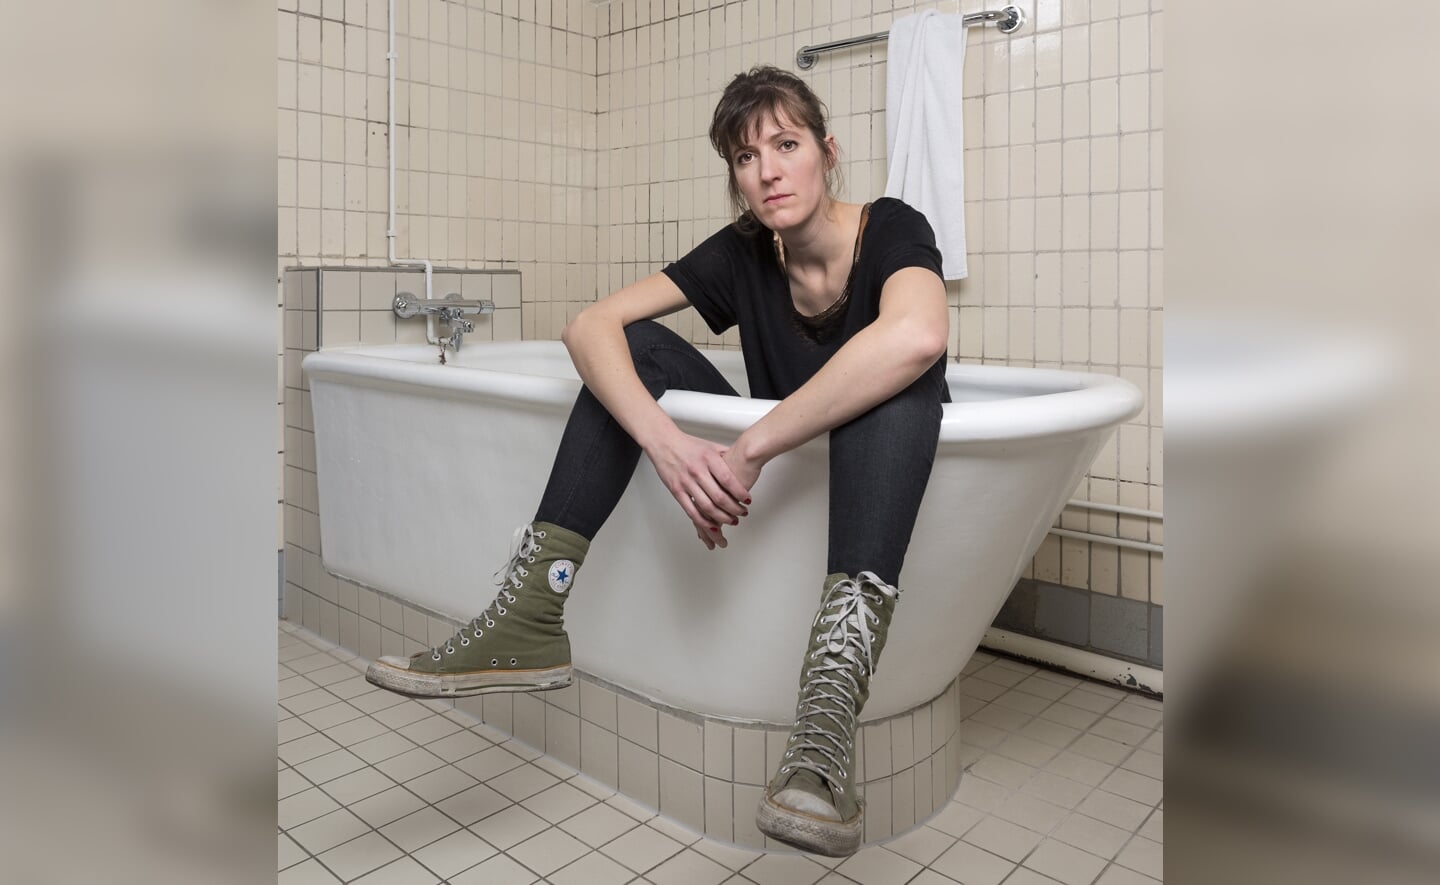 Janneke de Bijl bijt in januari het spits af in Podium Boxtel met haar debuutprogramma ‘Zonder zin kan het ook’. (Foto: Bas Losekoot).